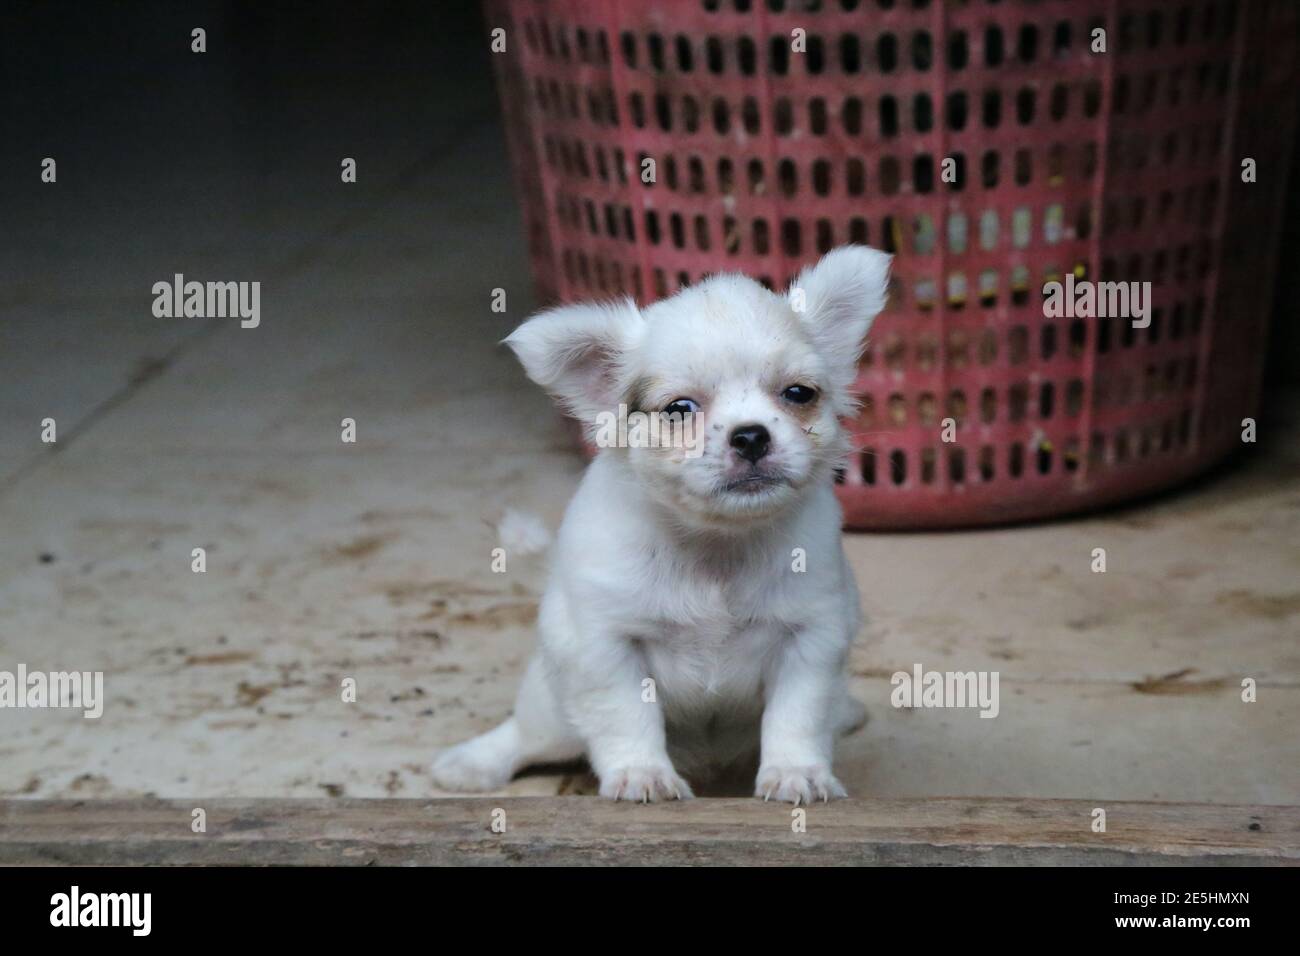 Un chien blanc dans une ferme vietnamienne Banque D'Images